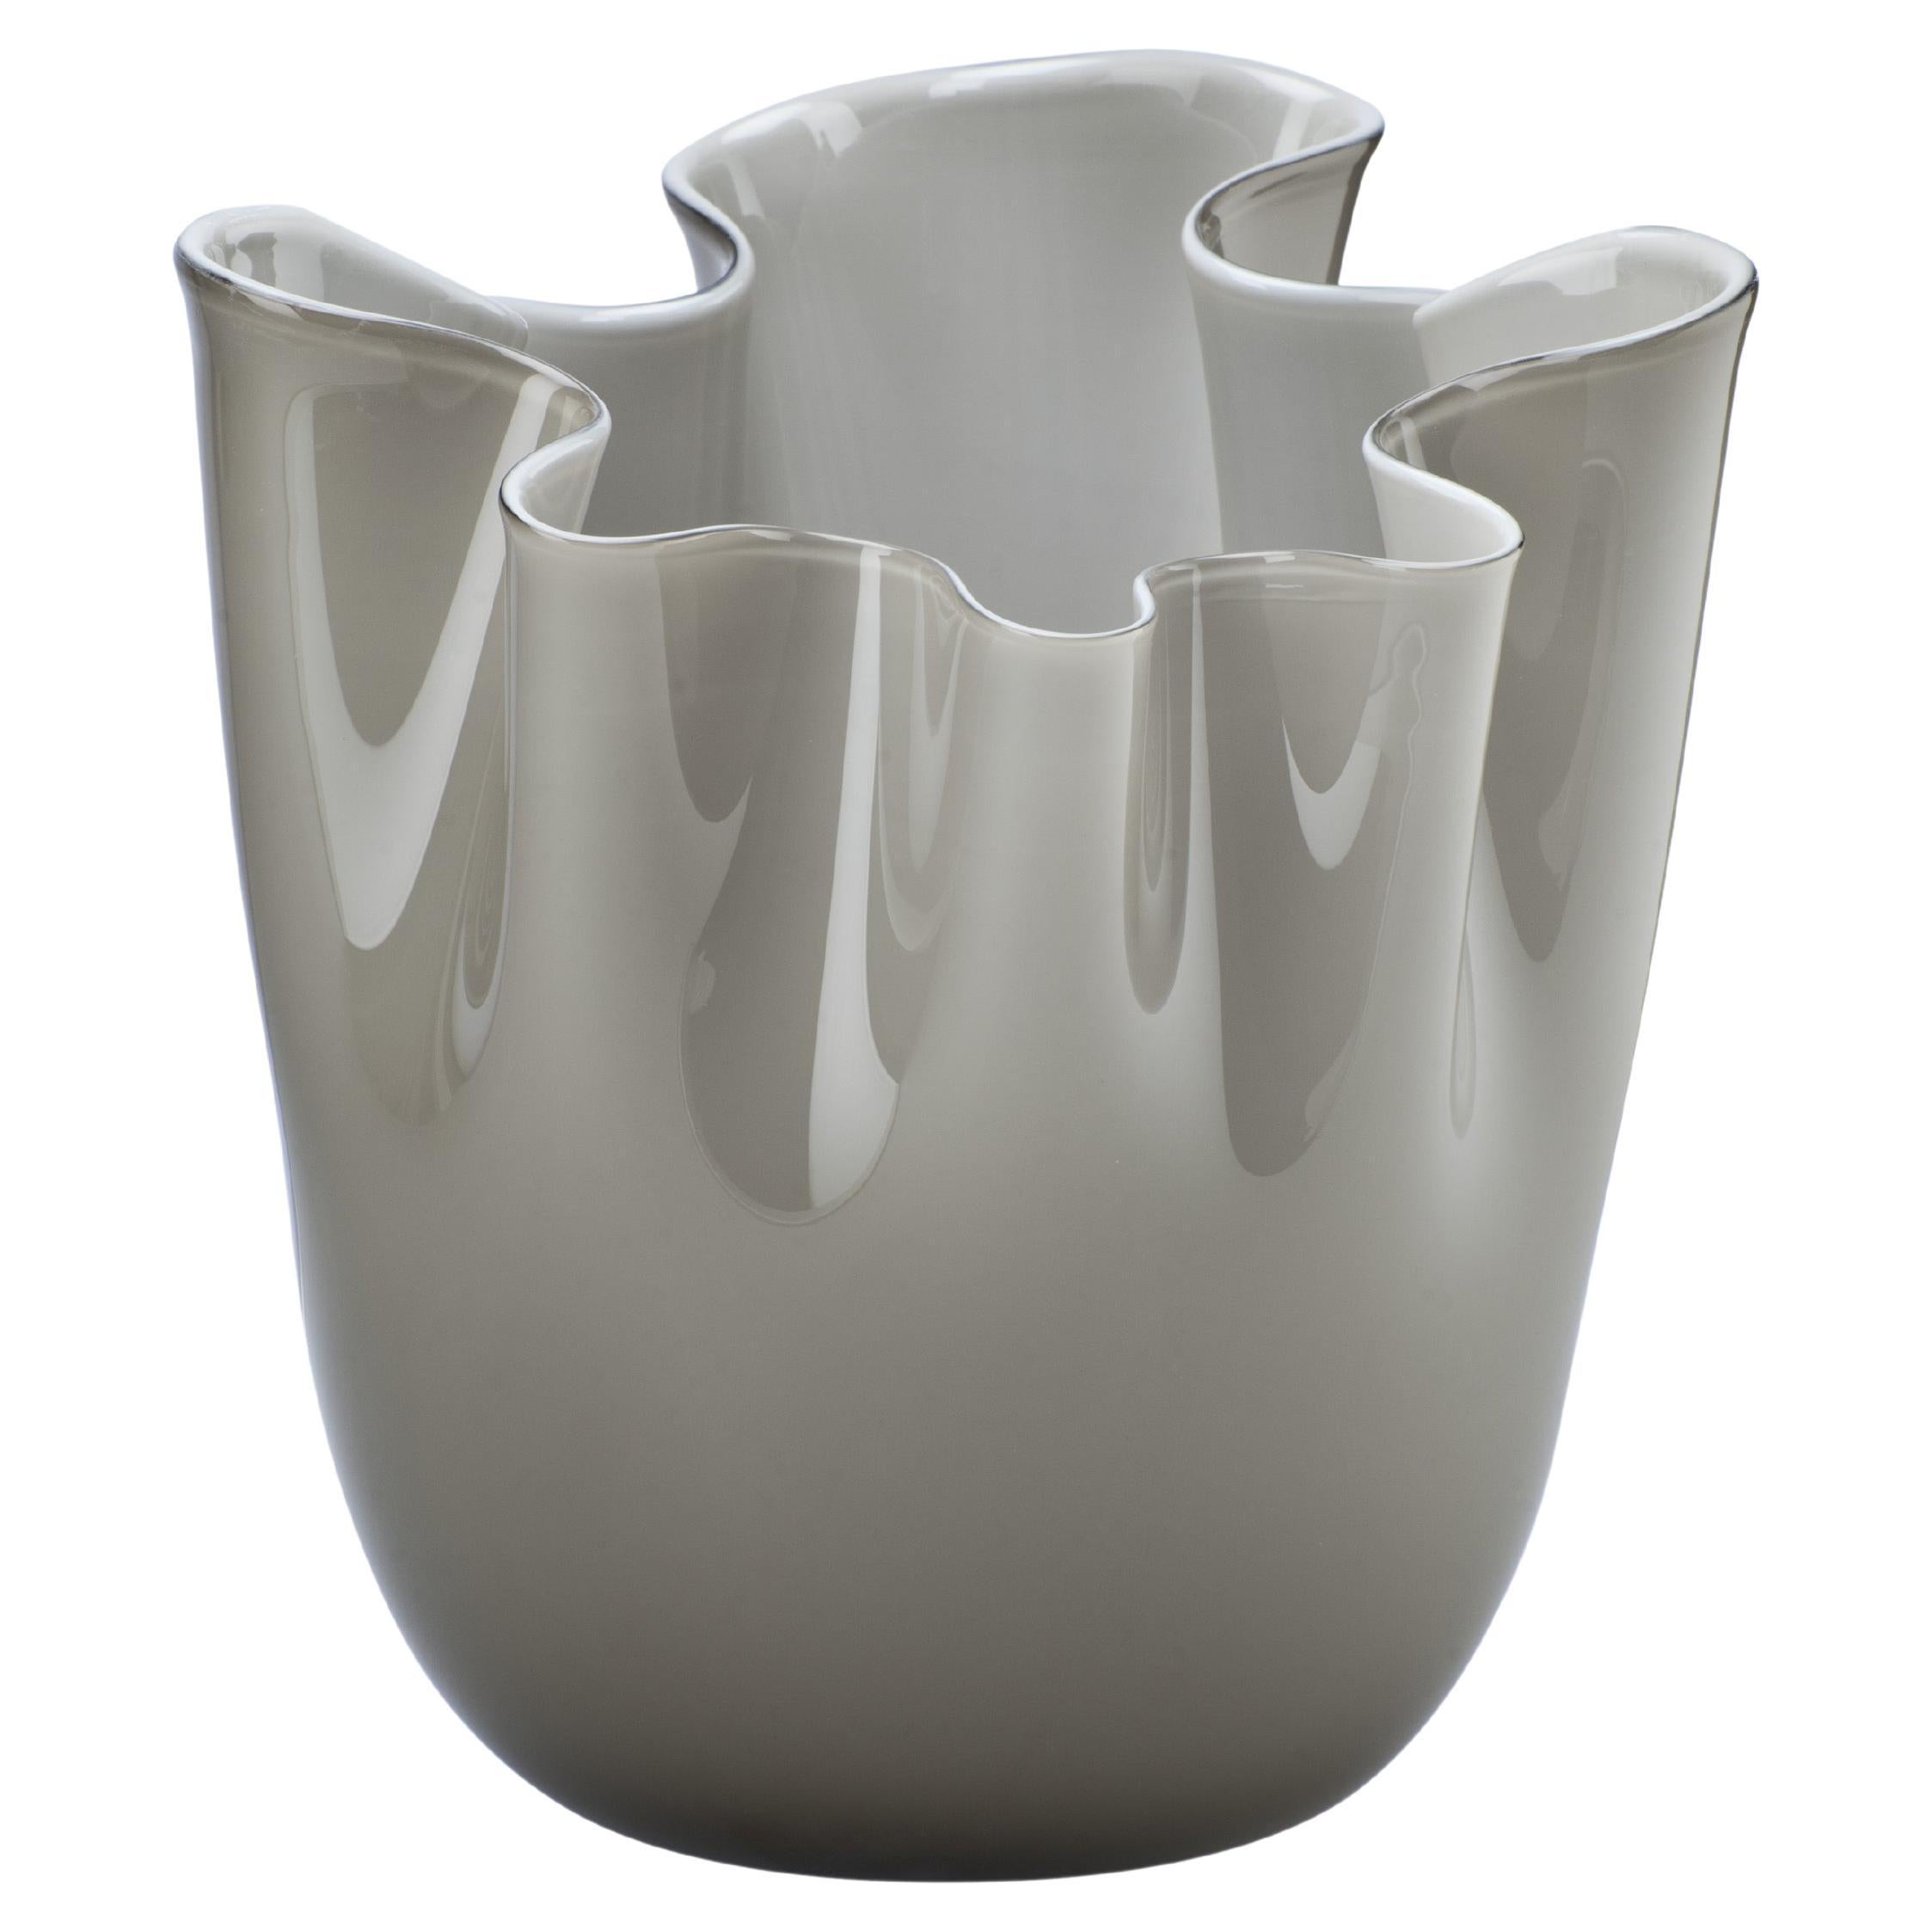 Fazzoletto Opalino Large Glass Vase in Grey by Fulvio Bianconi and Venini